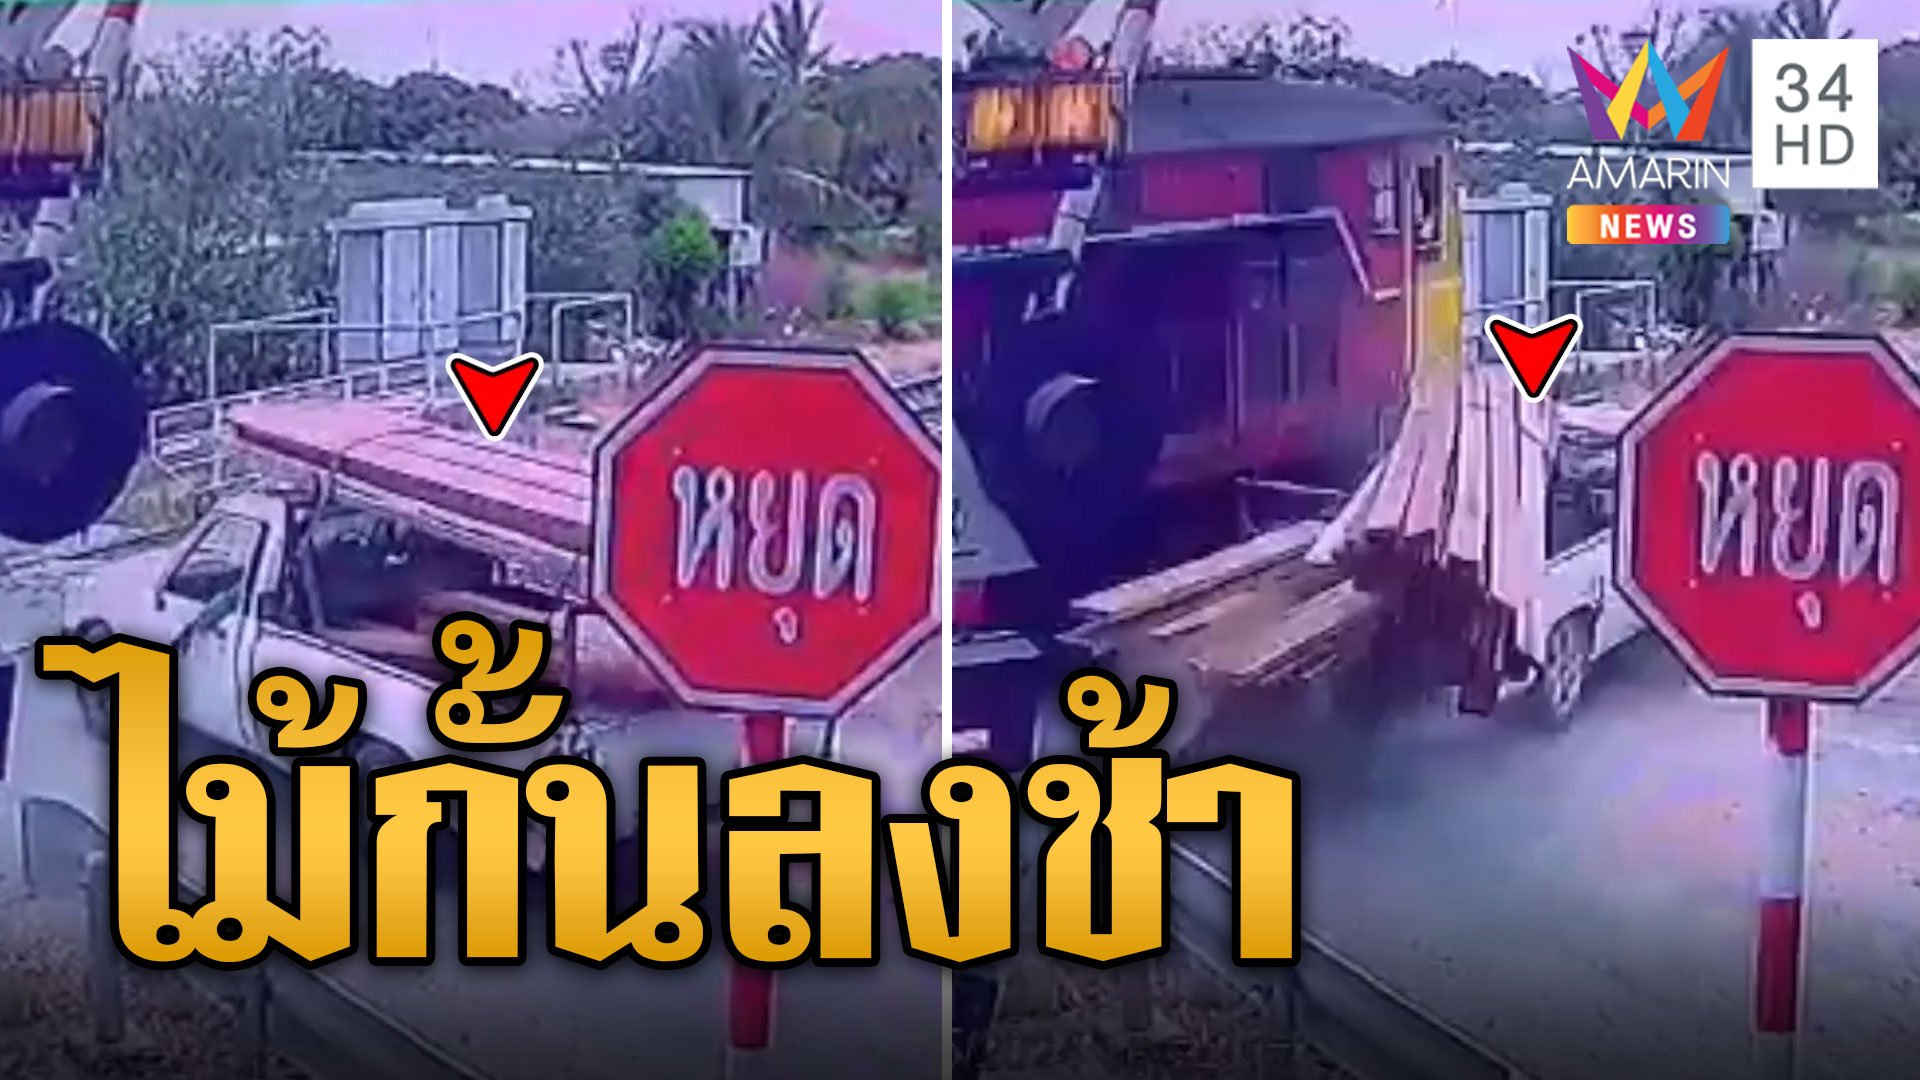 กระบะซวย! ข้ามทางรถไฟถูกชนเจ็บ 2 | ข่าวเที่ยงอมรินทร์ | 8 พ.ค. 67 | AMARIN TVHD34